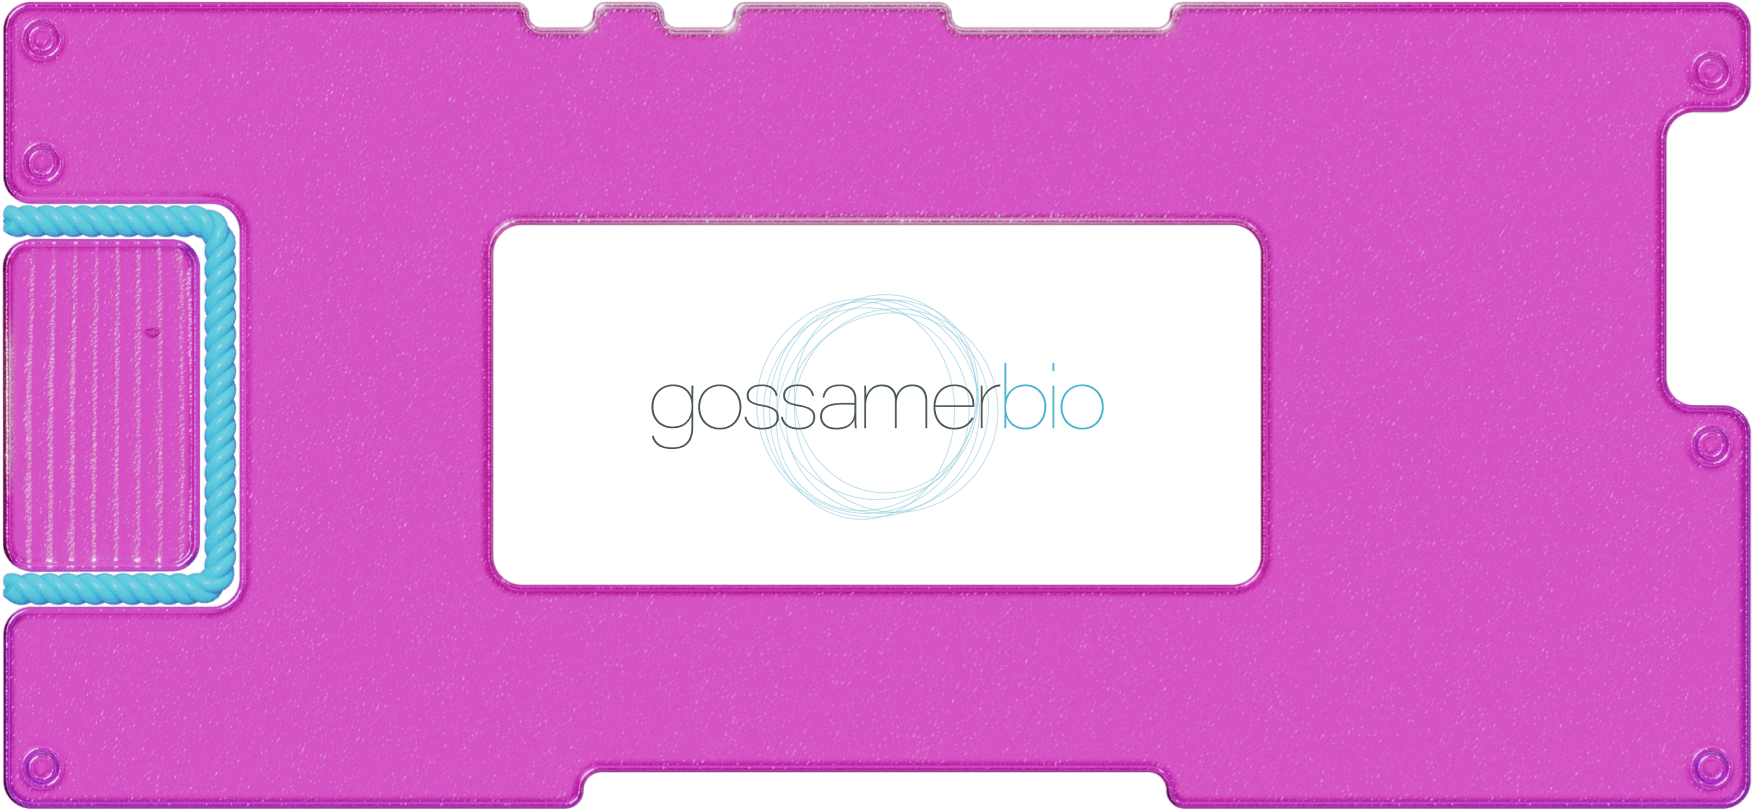 Обзор Gossamer Bio: не «гусь», а биотех